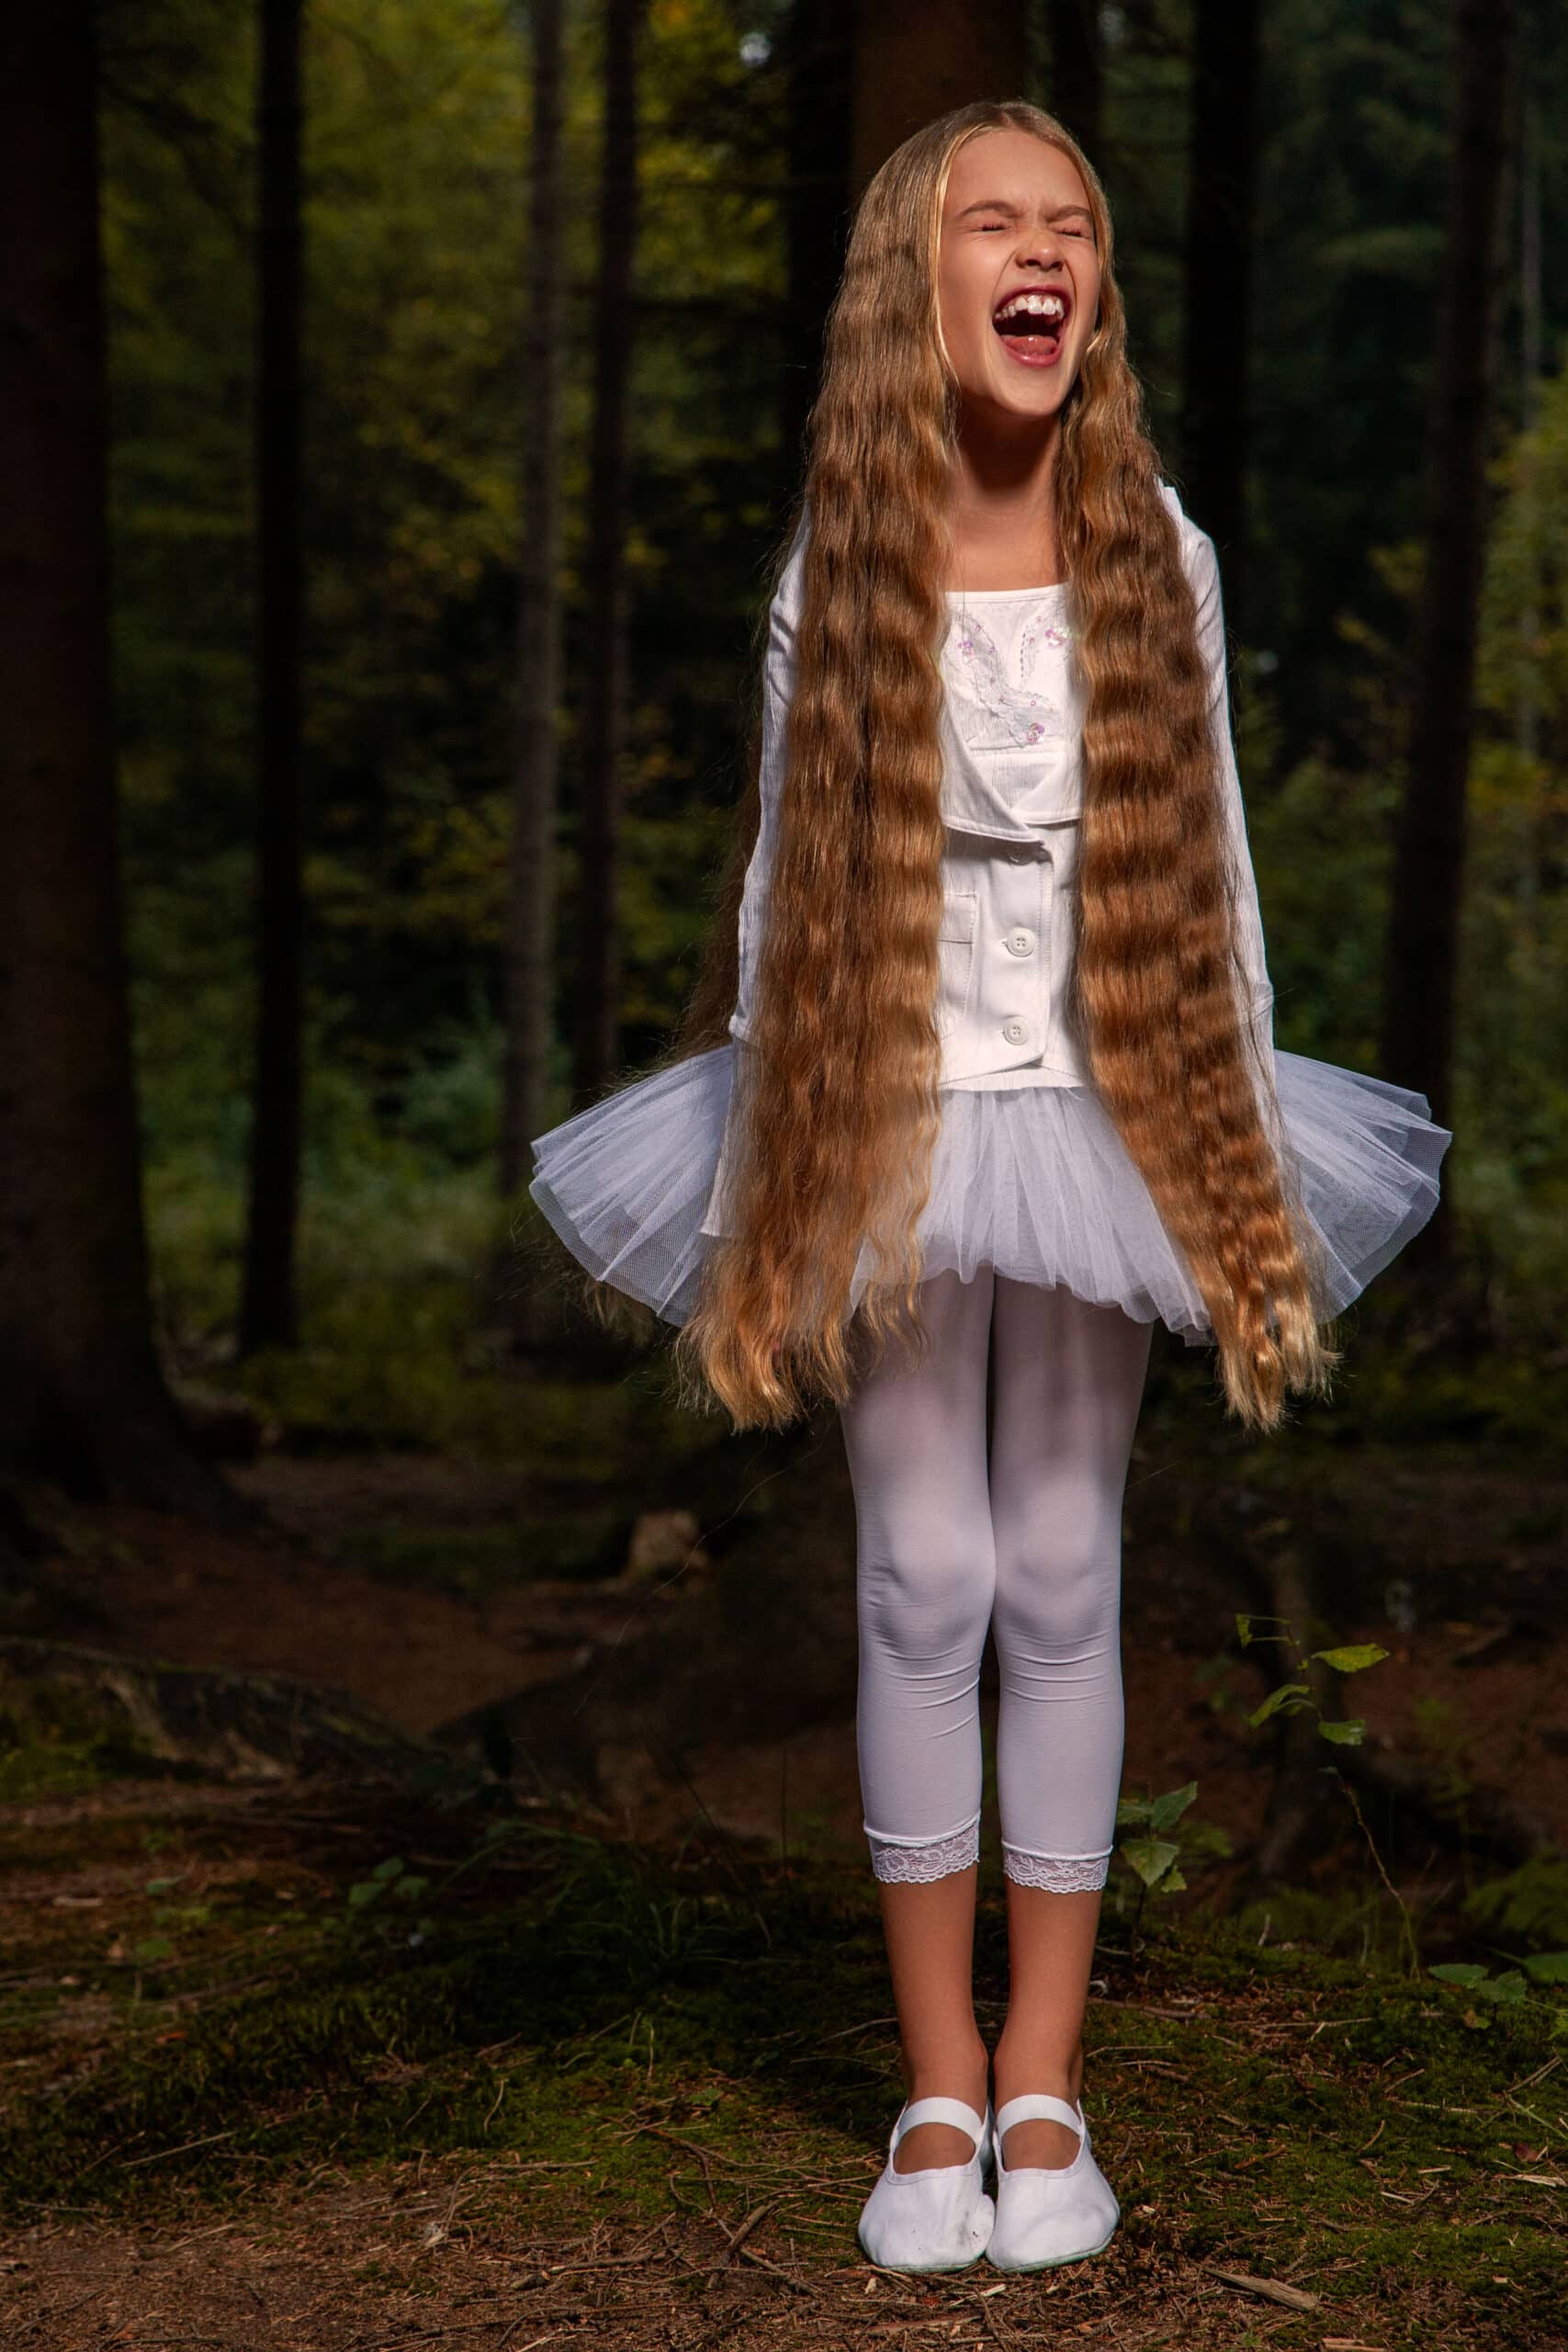 Ein junges Mädchen mit langen blonden Haaren lacht fröhlich in einem Wald. Es trägt eine weiße Bluse, ein Tutu und Leggings und wird von sanftem Licht angestrahlt. © Fotografie Tomas Rodriguez